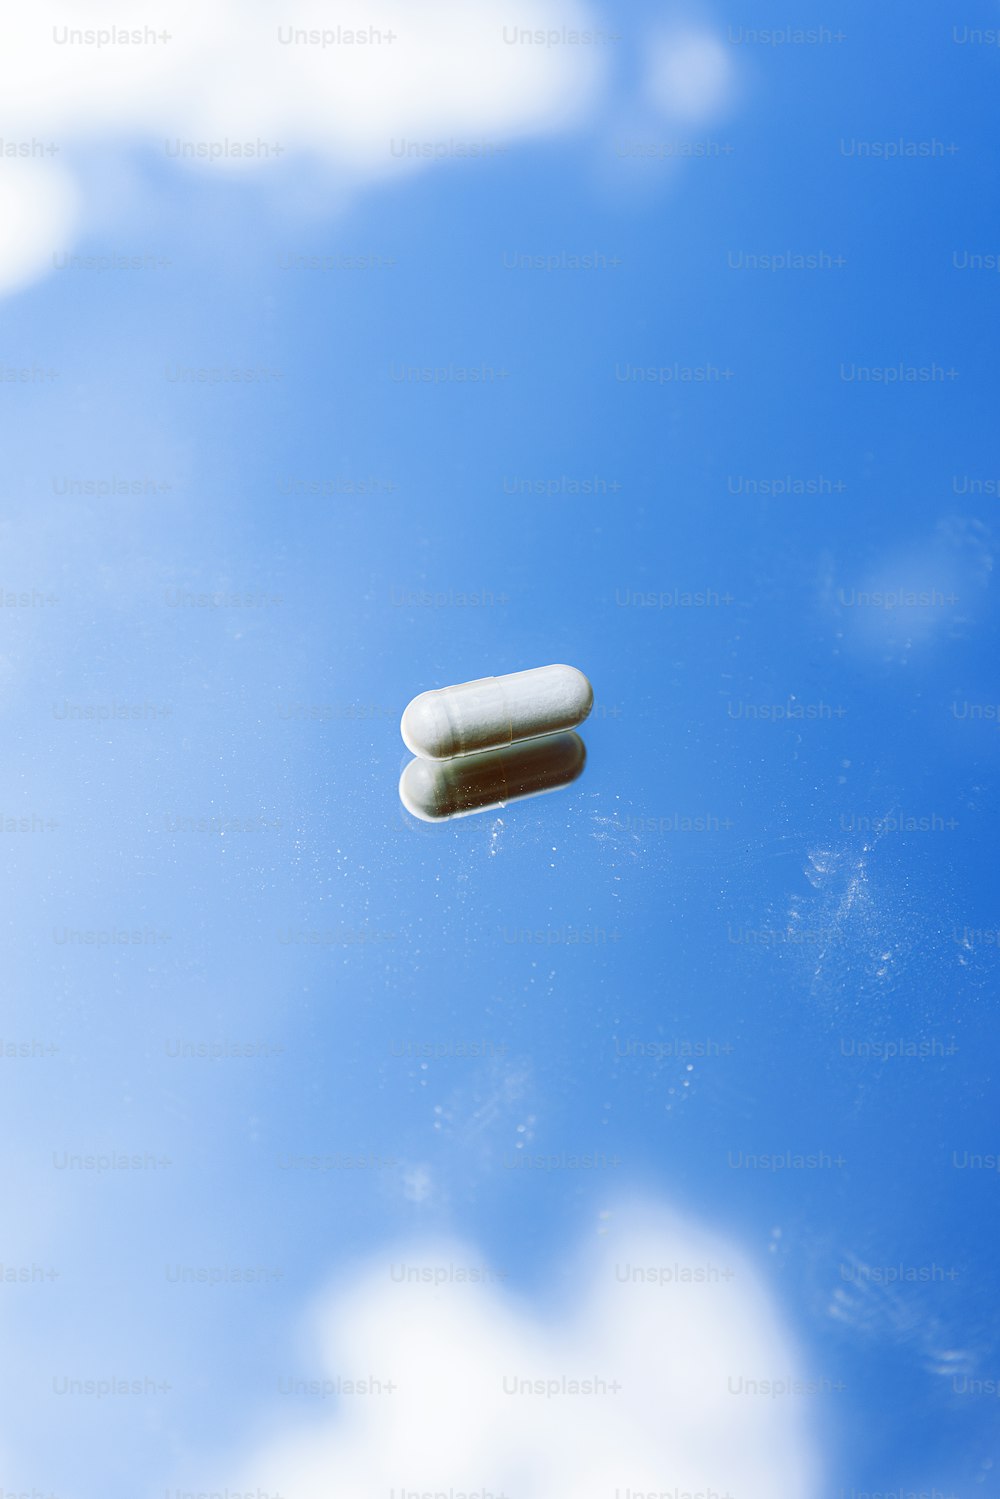 duas pílulas flutuando no ar em um dia nublado